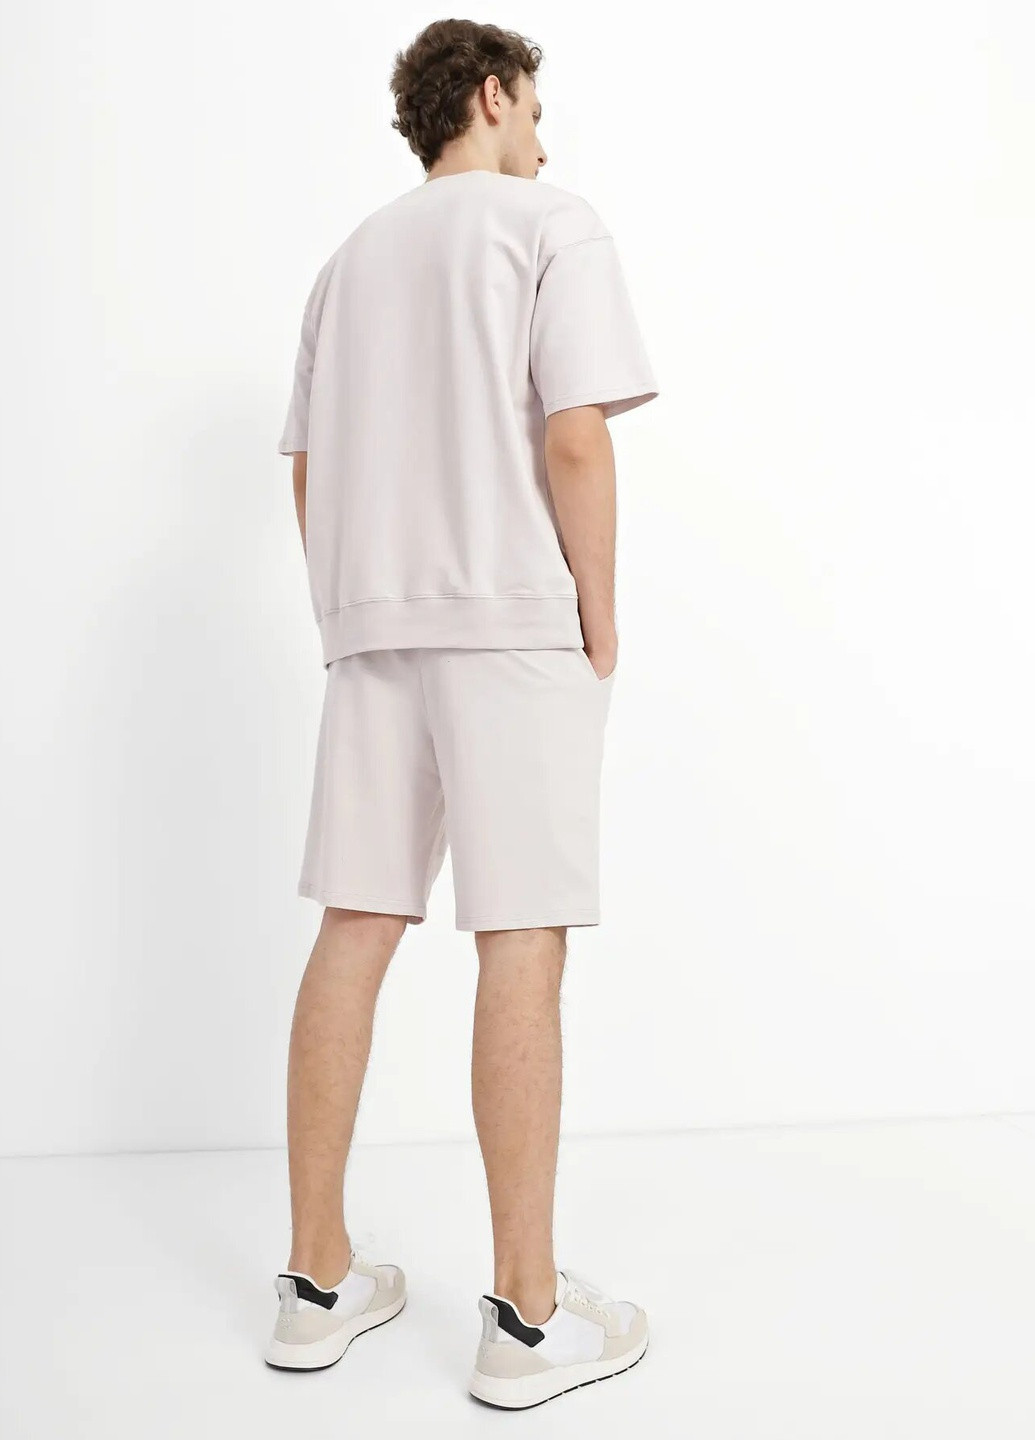 Бежевый летний комплект для мужчин футболка и шорты с шортами Роза